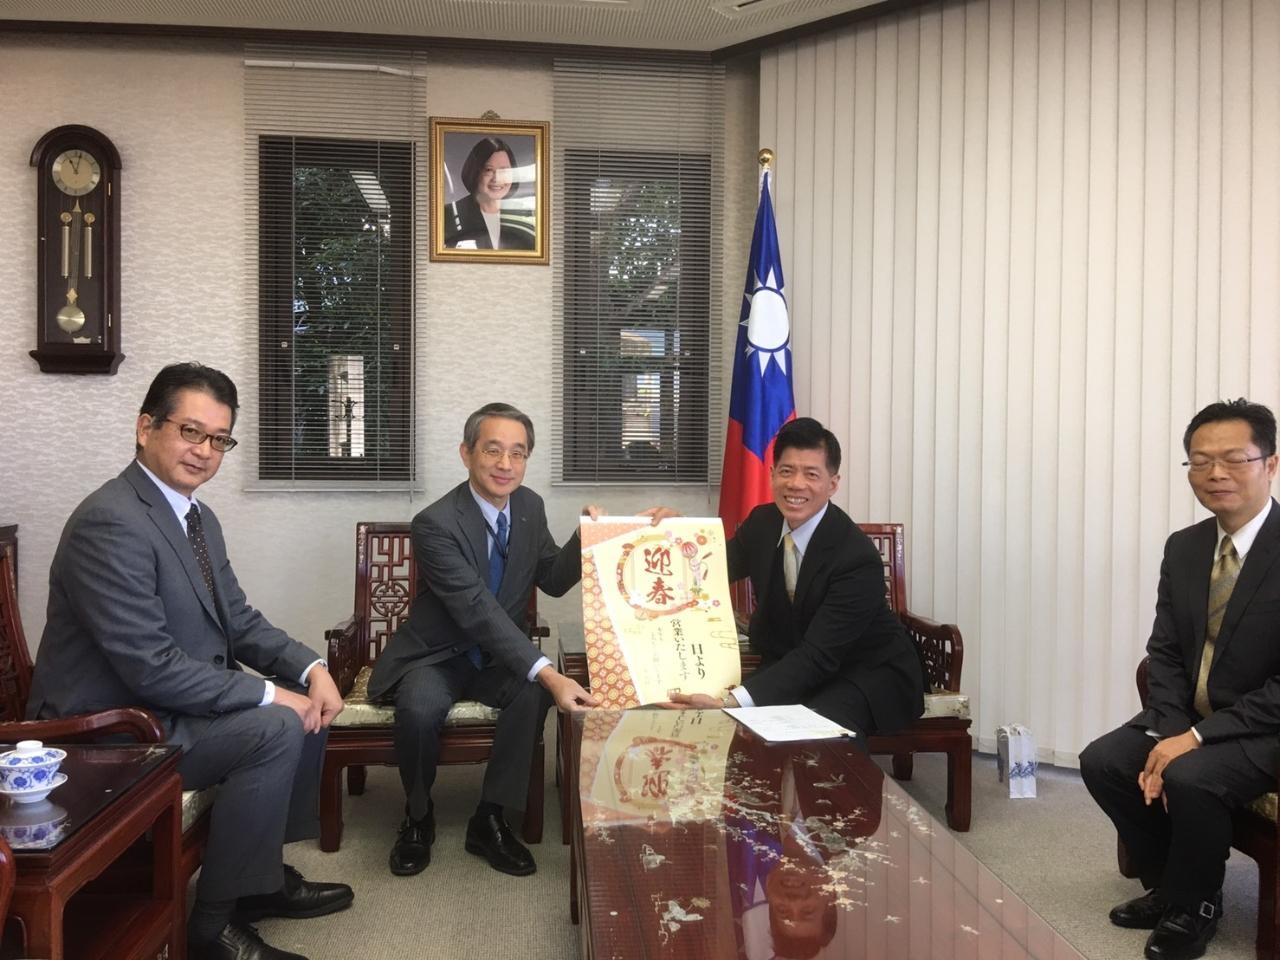 11月29日、福岡商工会議所産業振興部西岡潤史部長、夏井圭介様が陳総領事を表敬訪問。